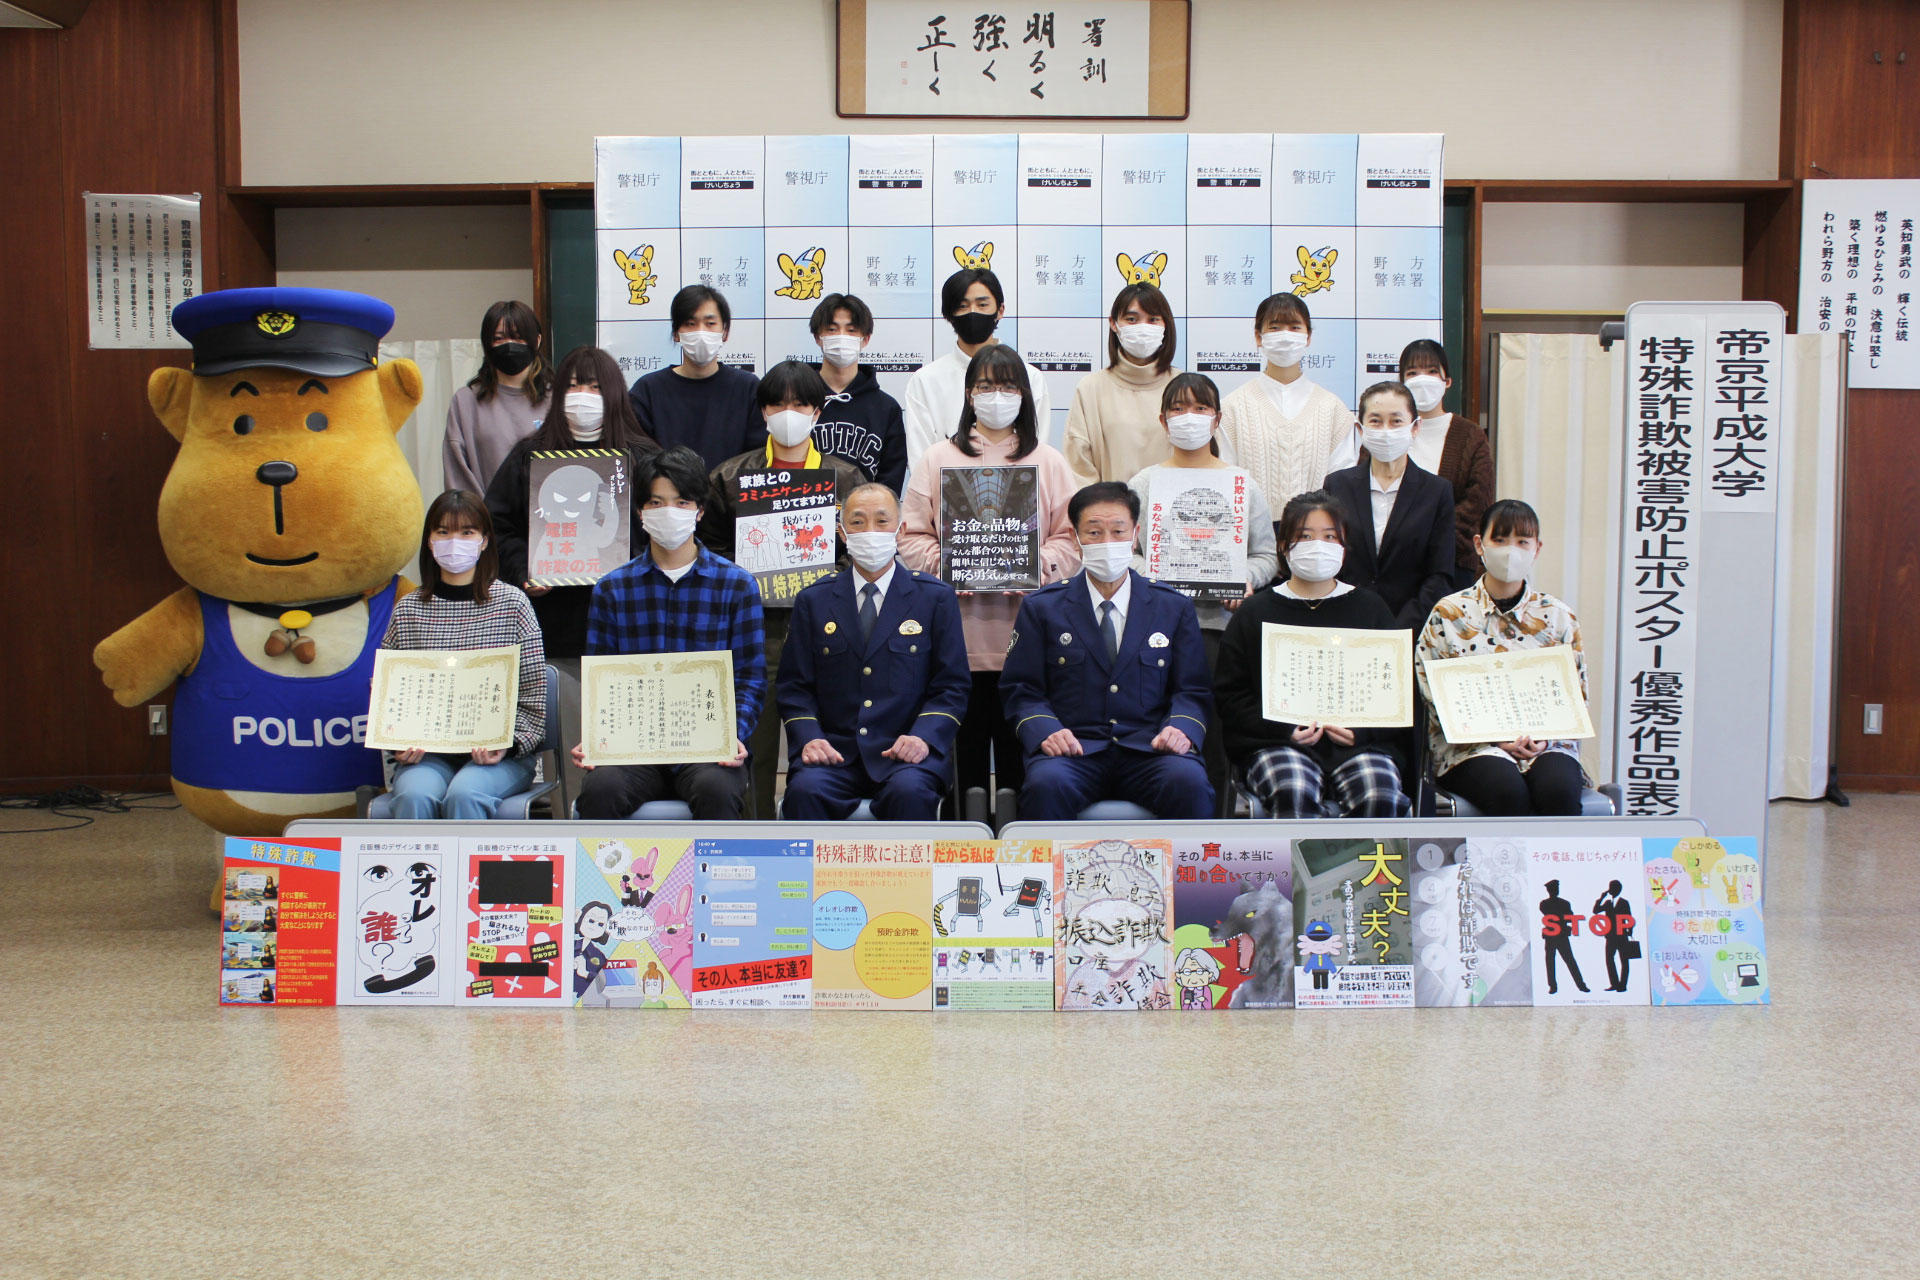 帝京平成大学メディア文化コースの学生が特殊詐欺犯罪防止ポスターを制作 -- 特殊詐欺被害防止活動等に活用、優秀作品が野方警察署から表彰